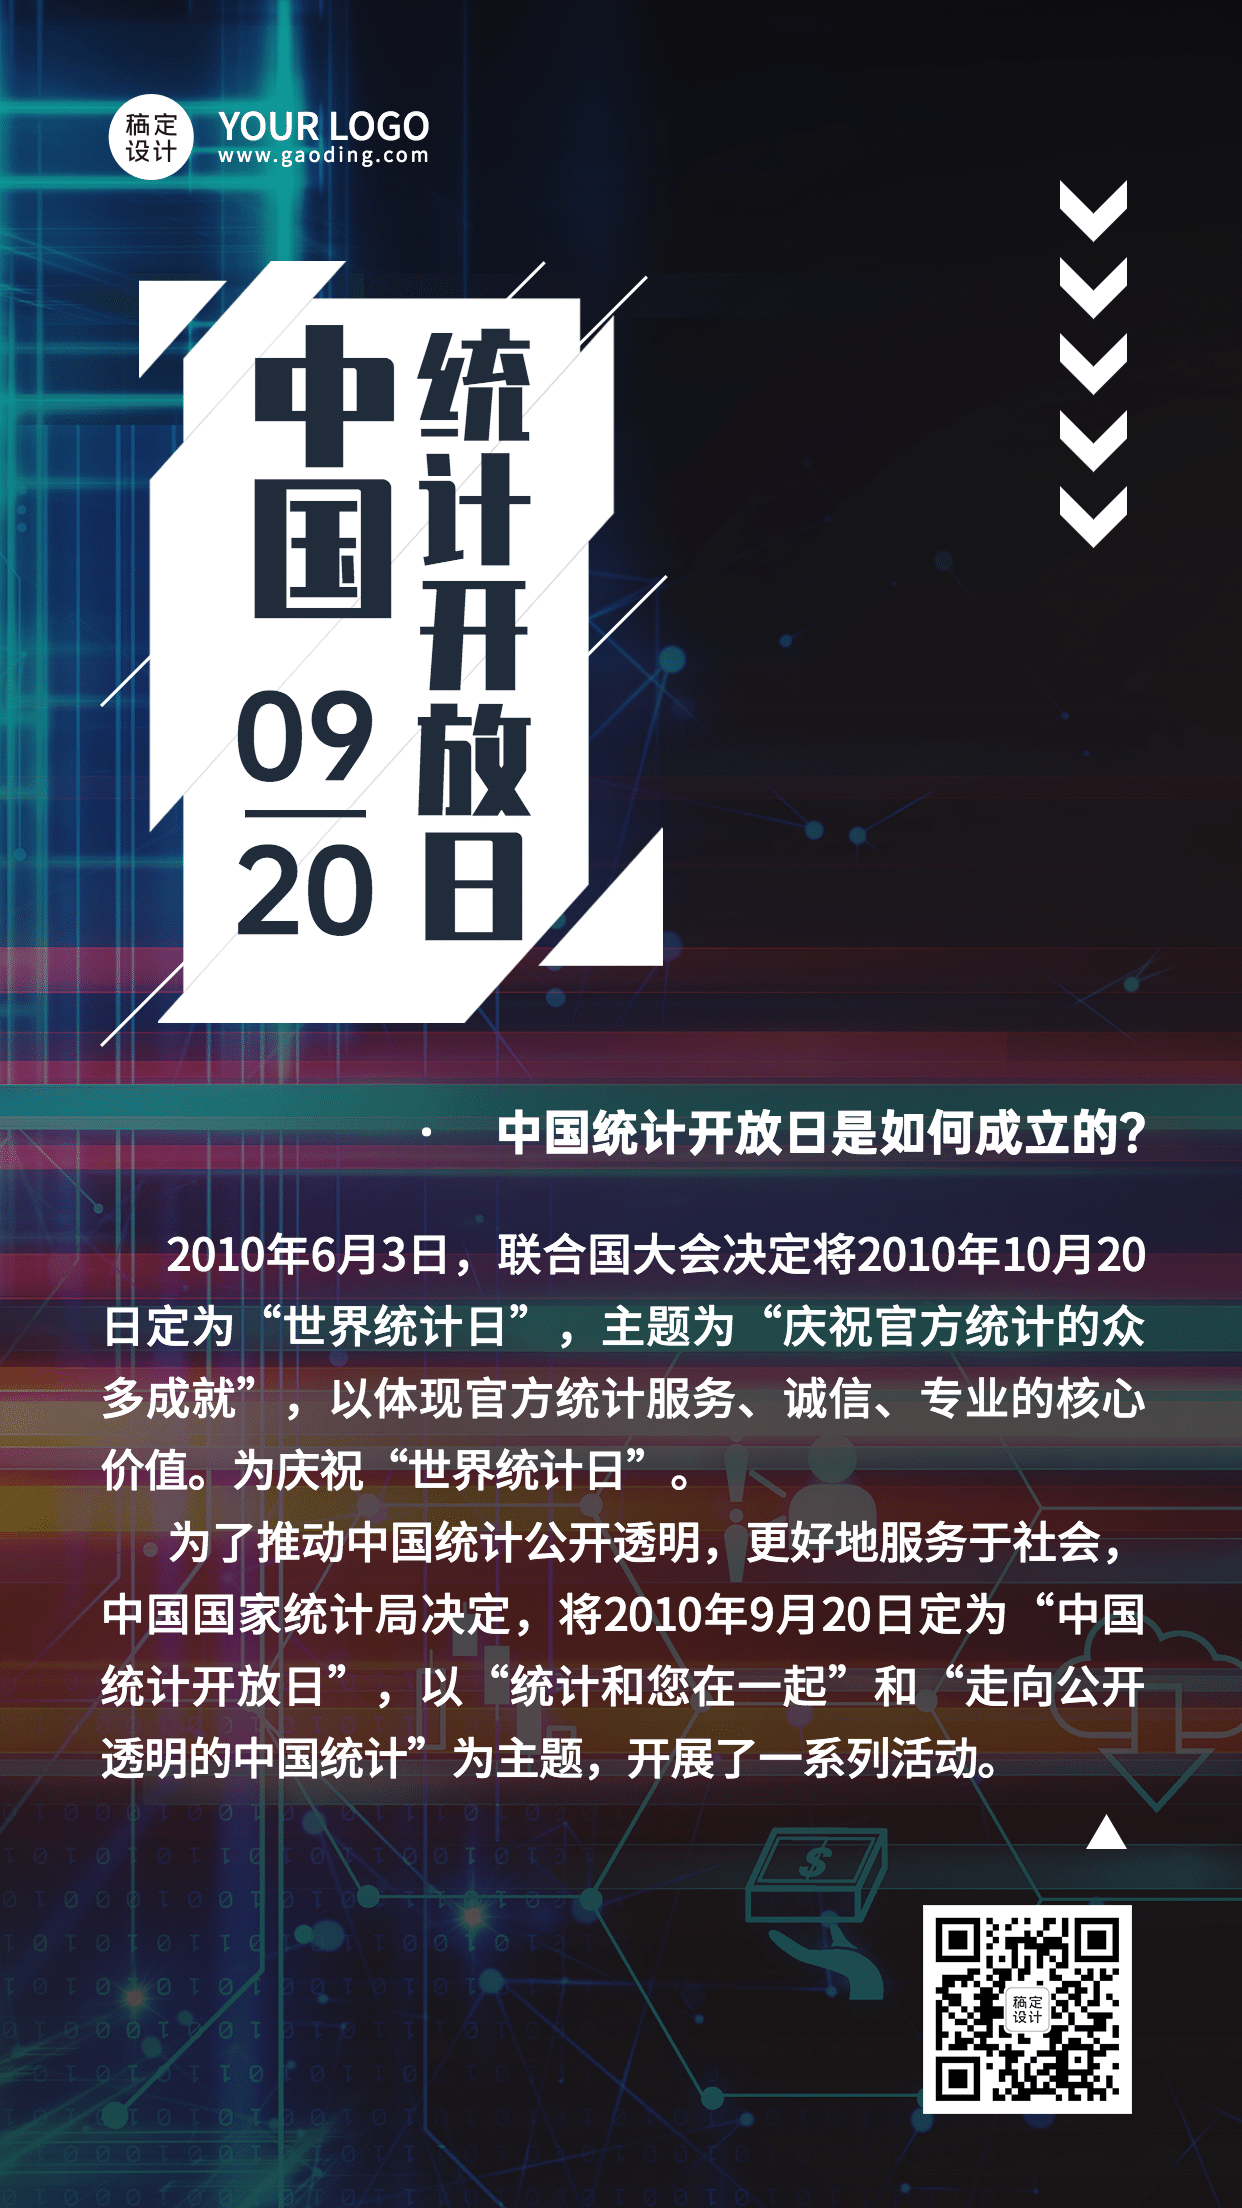 中国统计开放日数据分析节日科普酷炫手机海报预览效果